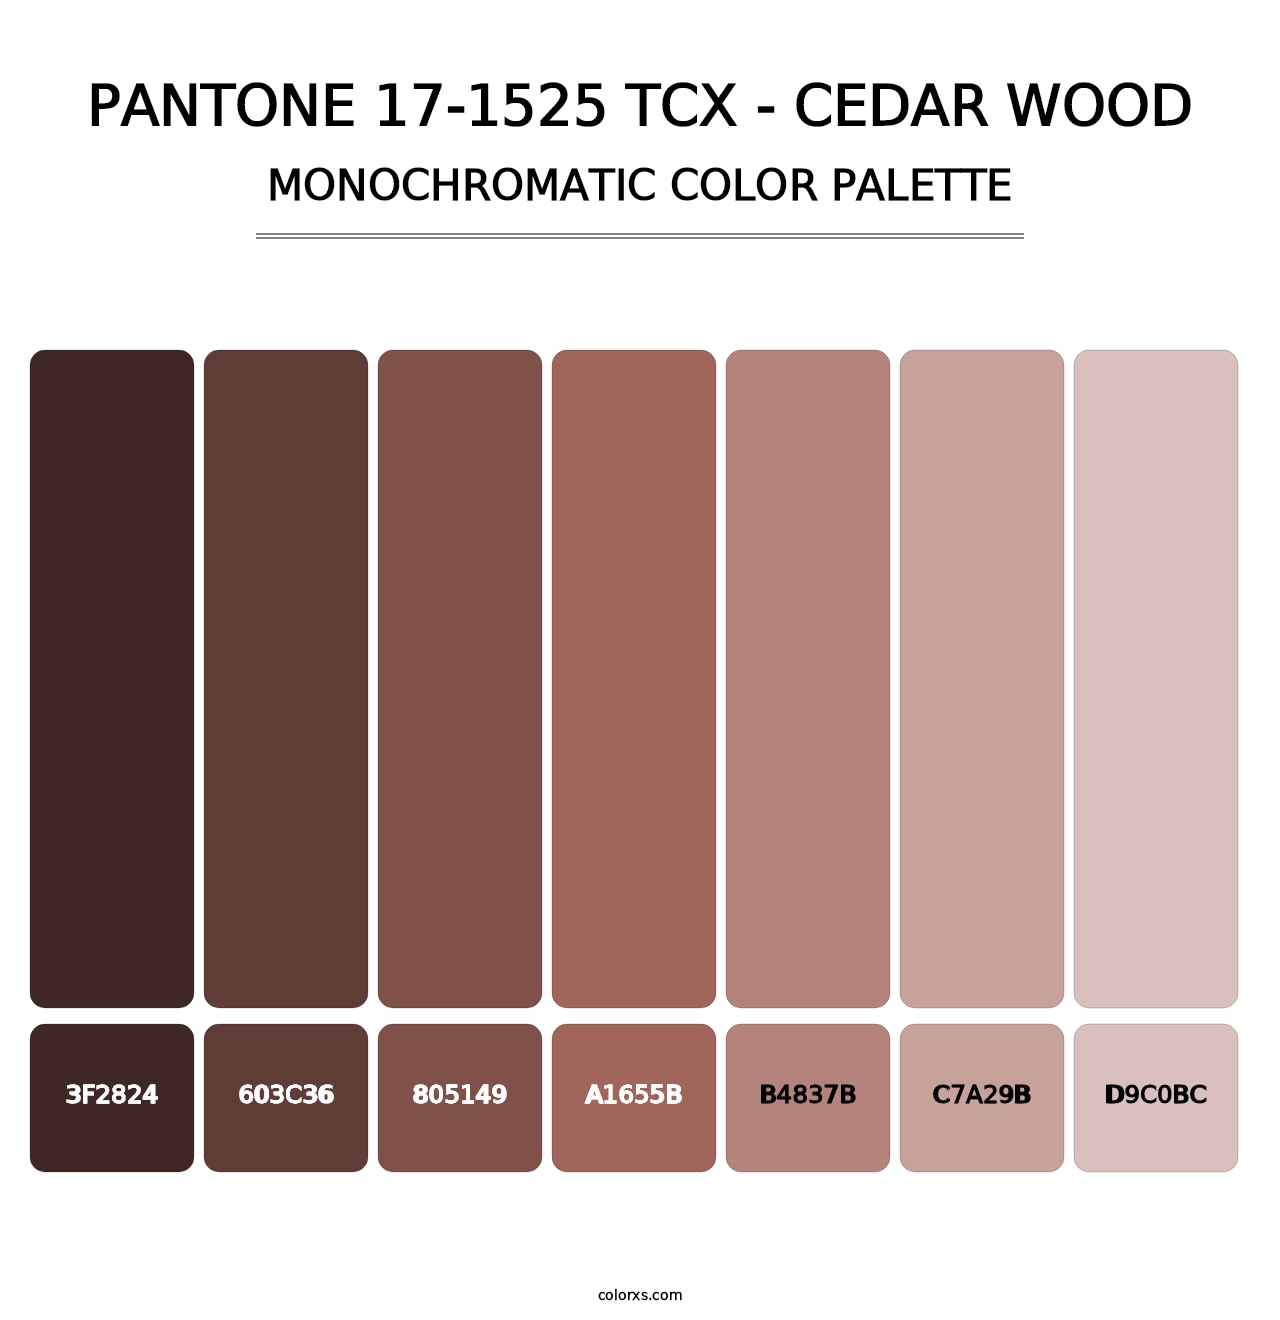 PANTONE 17-1525 TCX - Cedar Wood - Monochromatic Color Palette